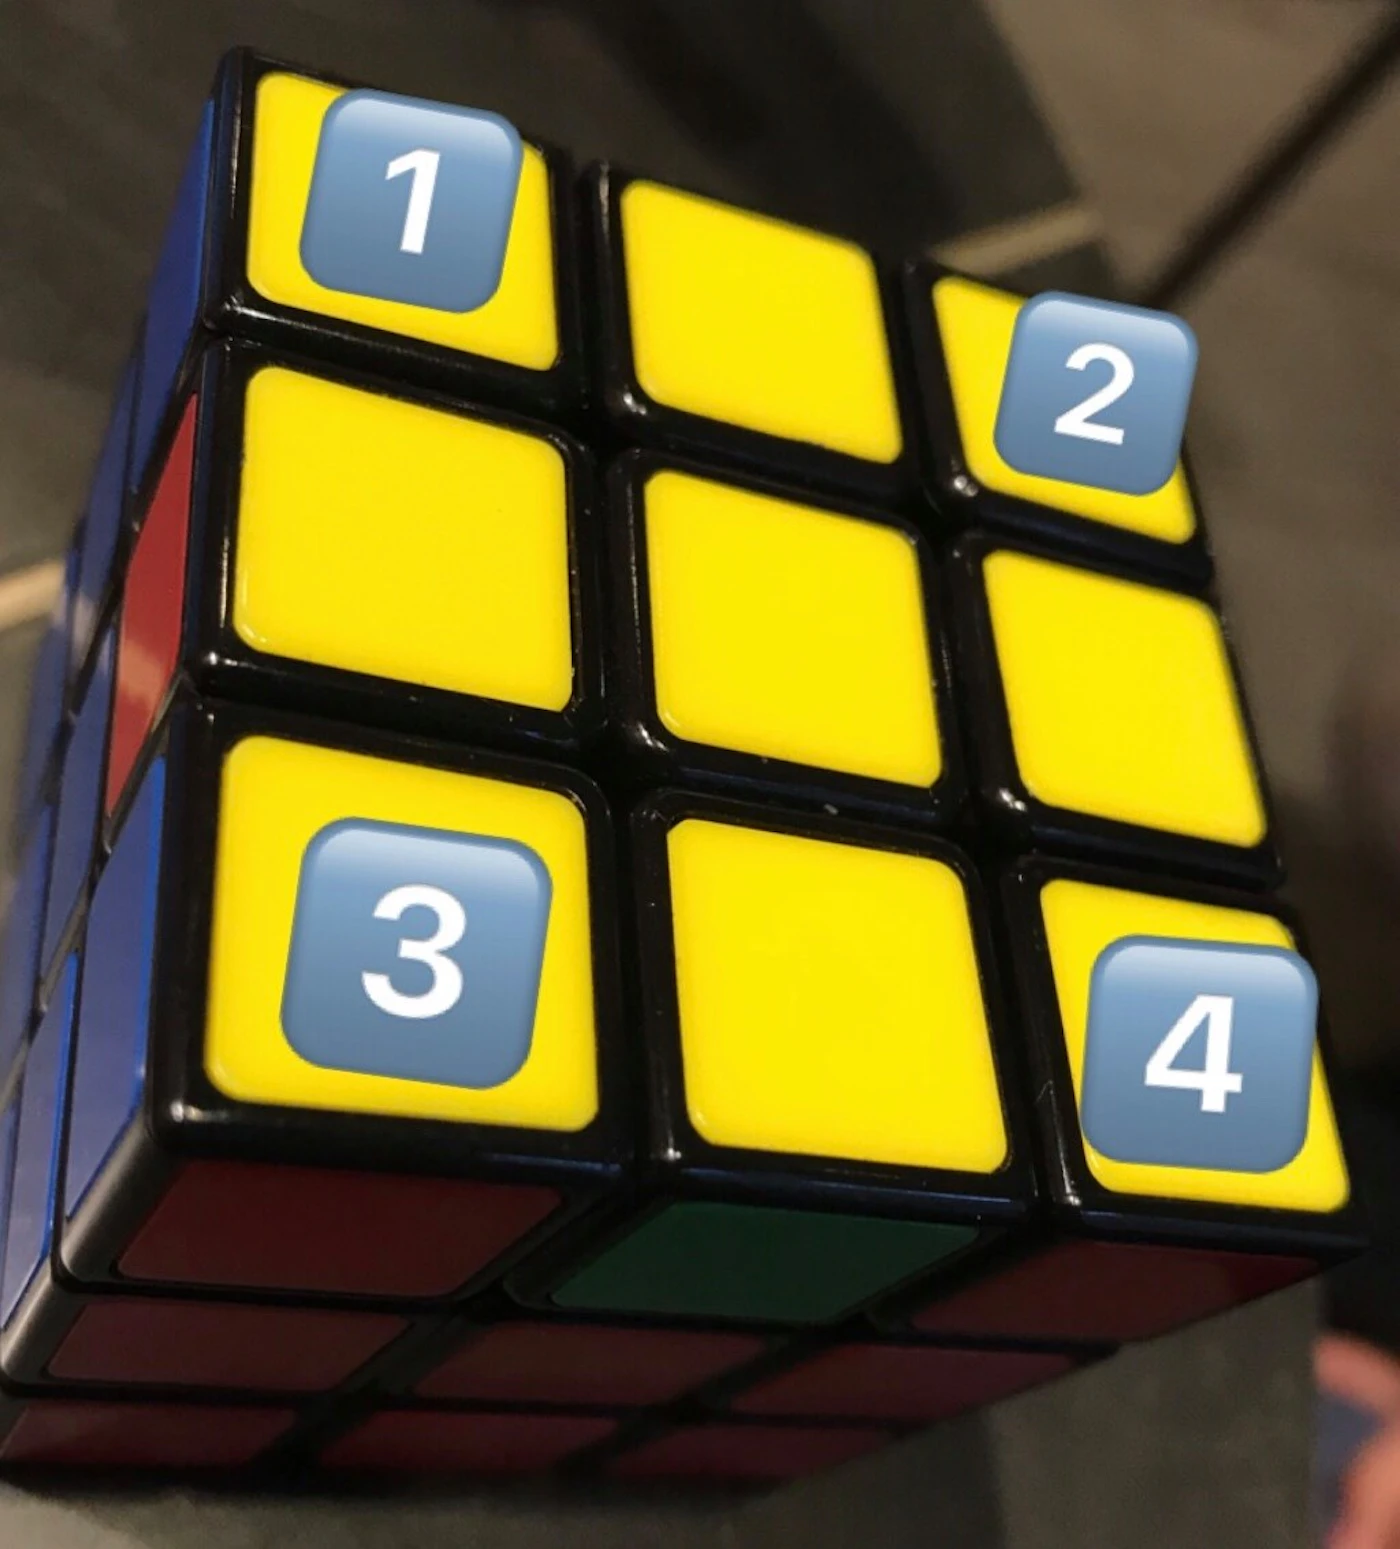 🥇Comment faire un Rubik's Cube 3x3 ?